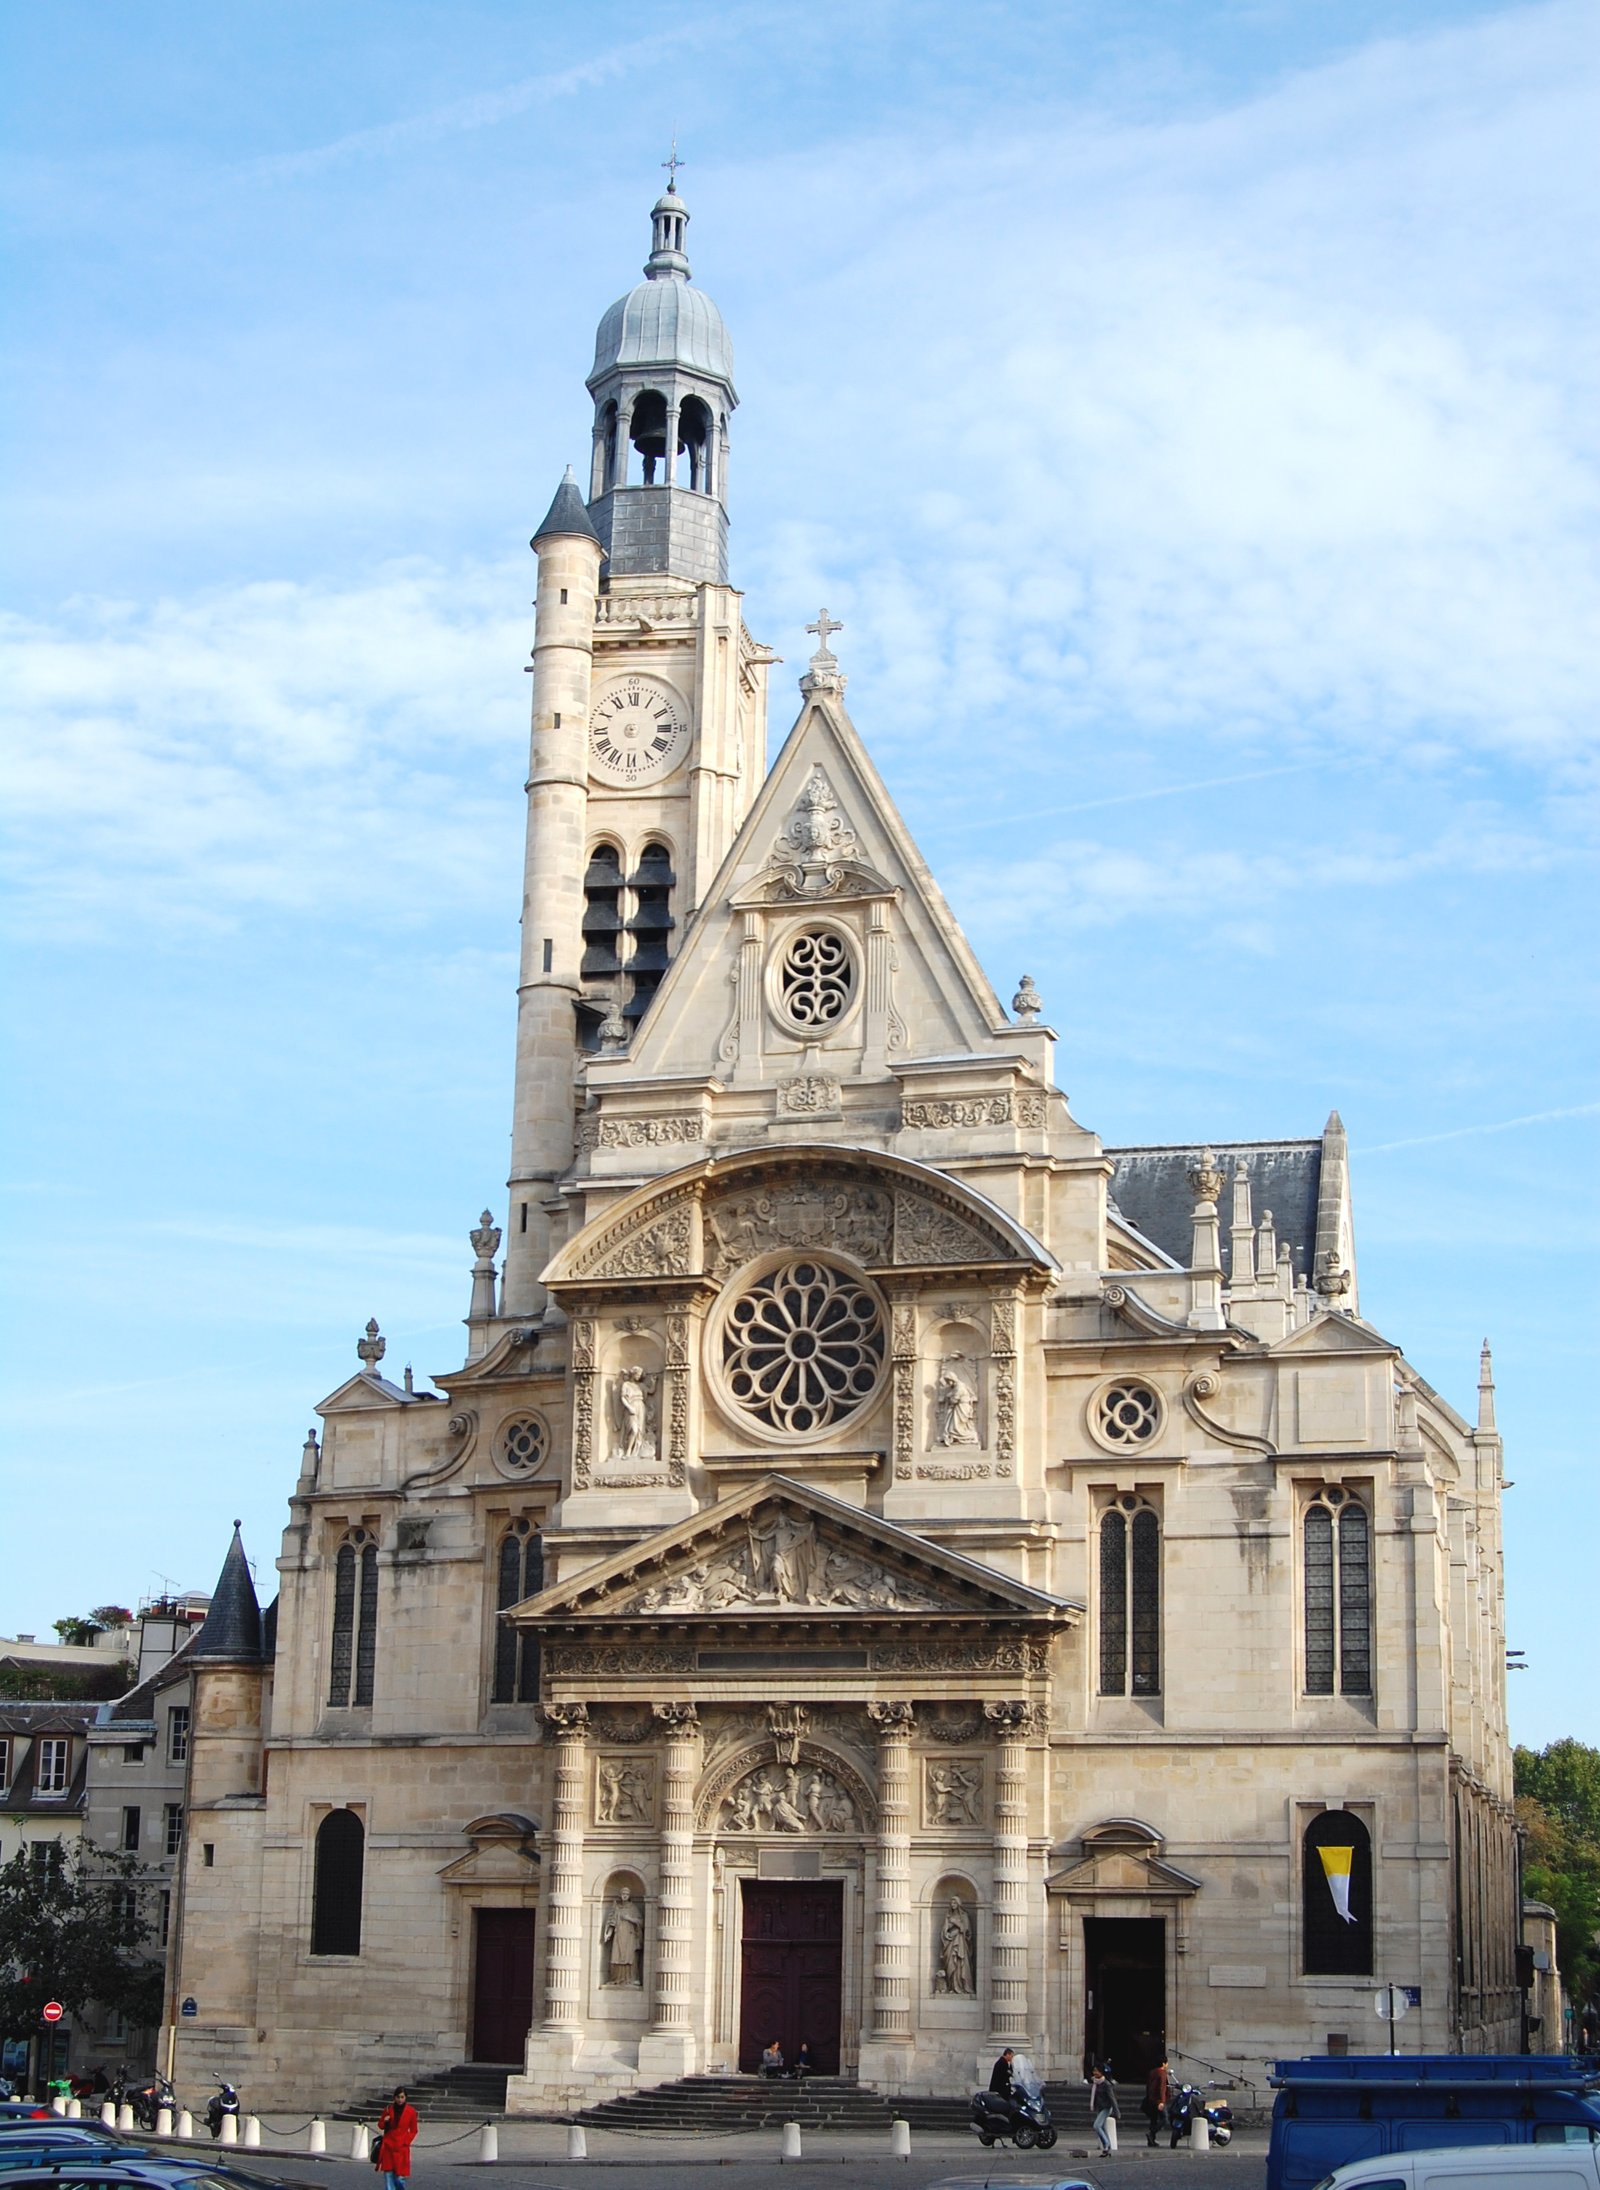 Parish of Saint-Etienne-du-Mont